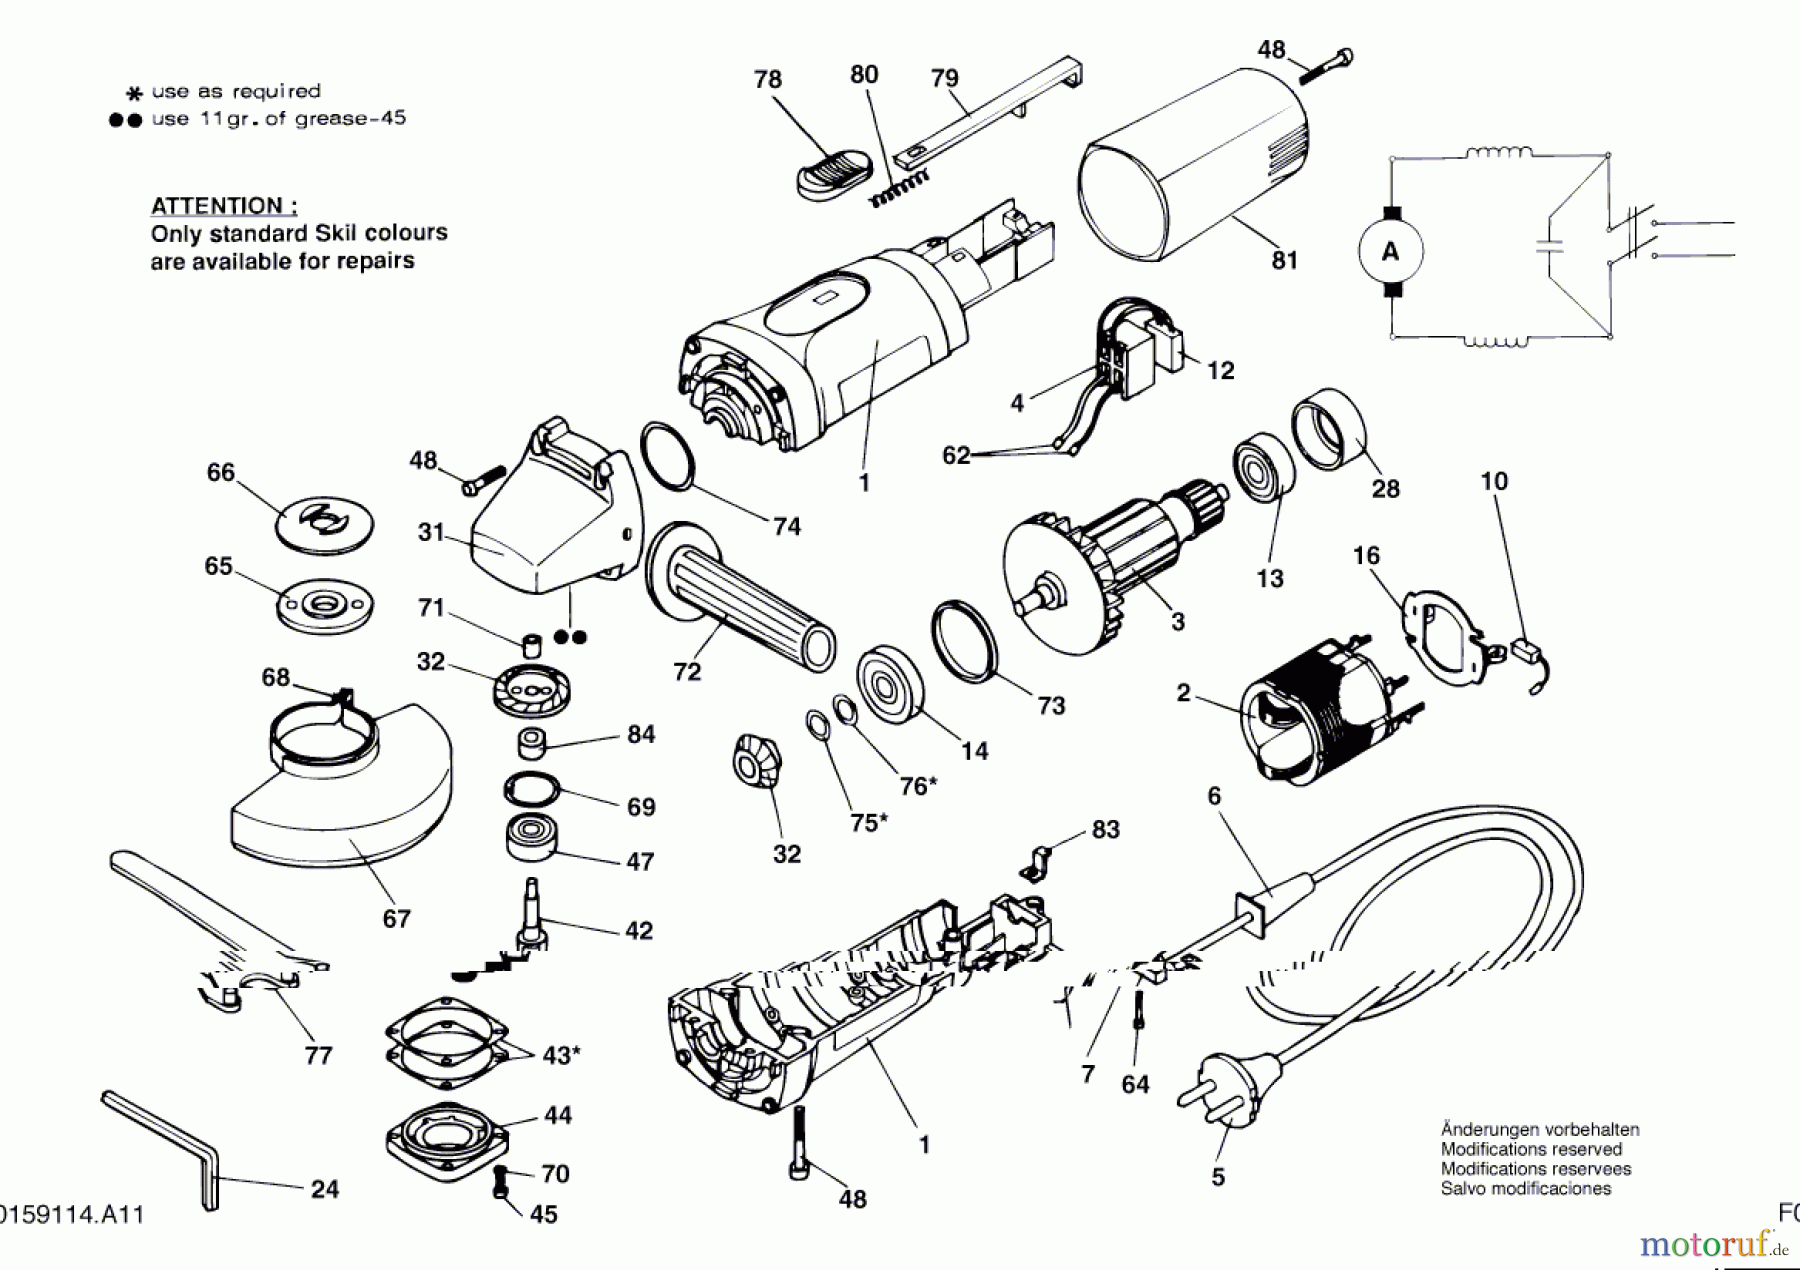  Bosch Werkzeug Hw-Winkelschleifer 9114 H1 Seite 1